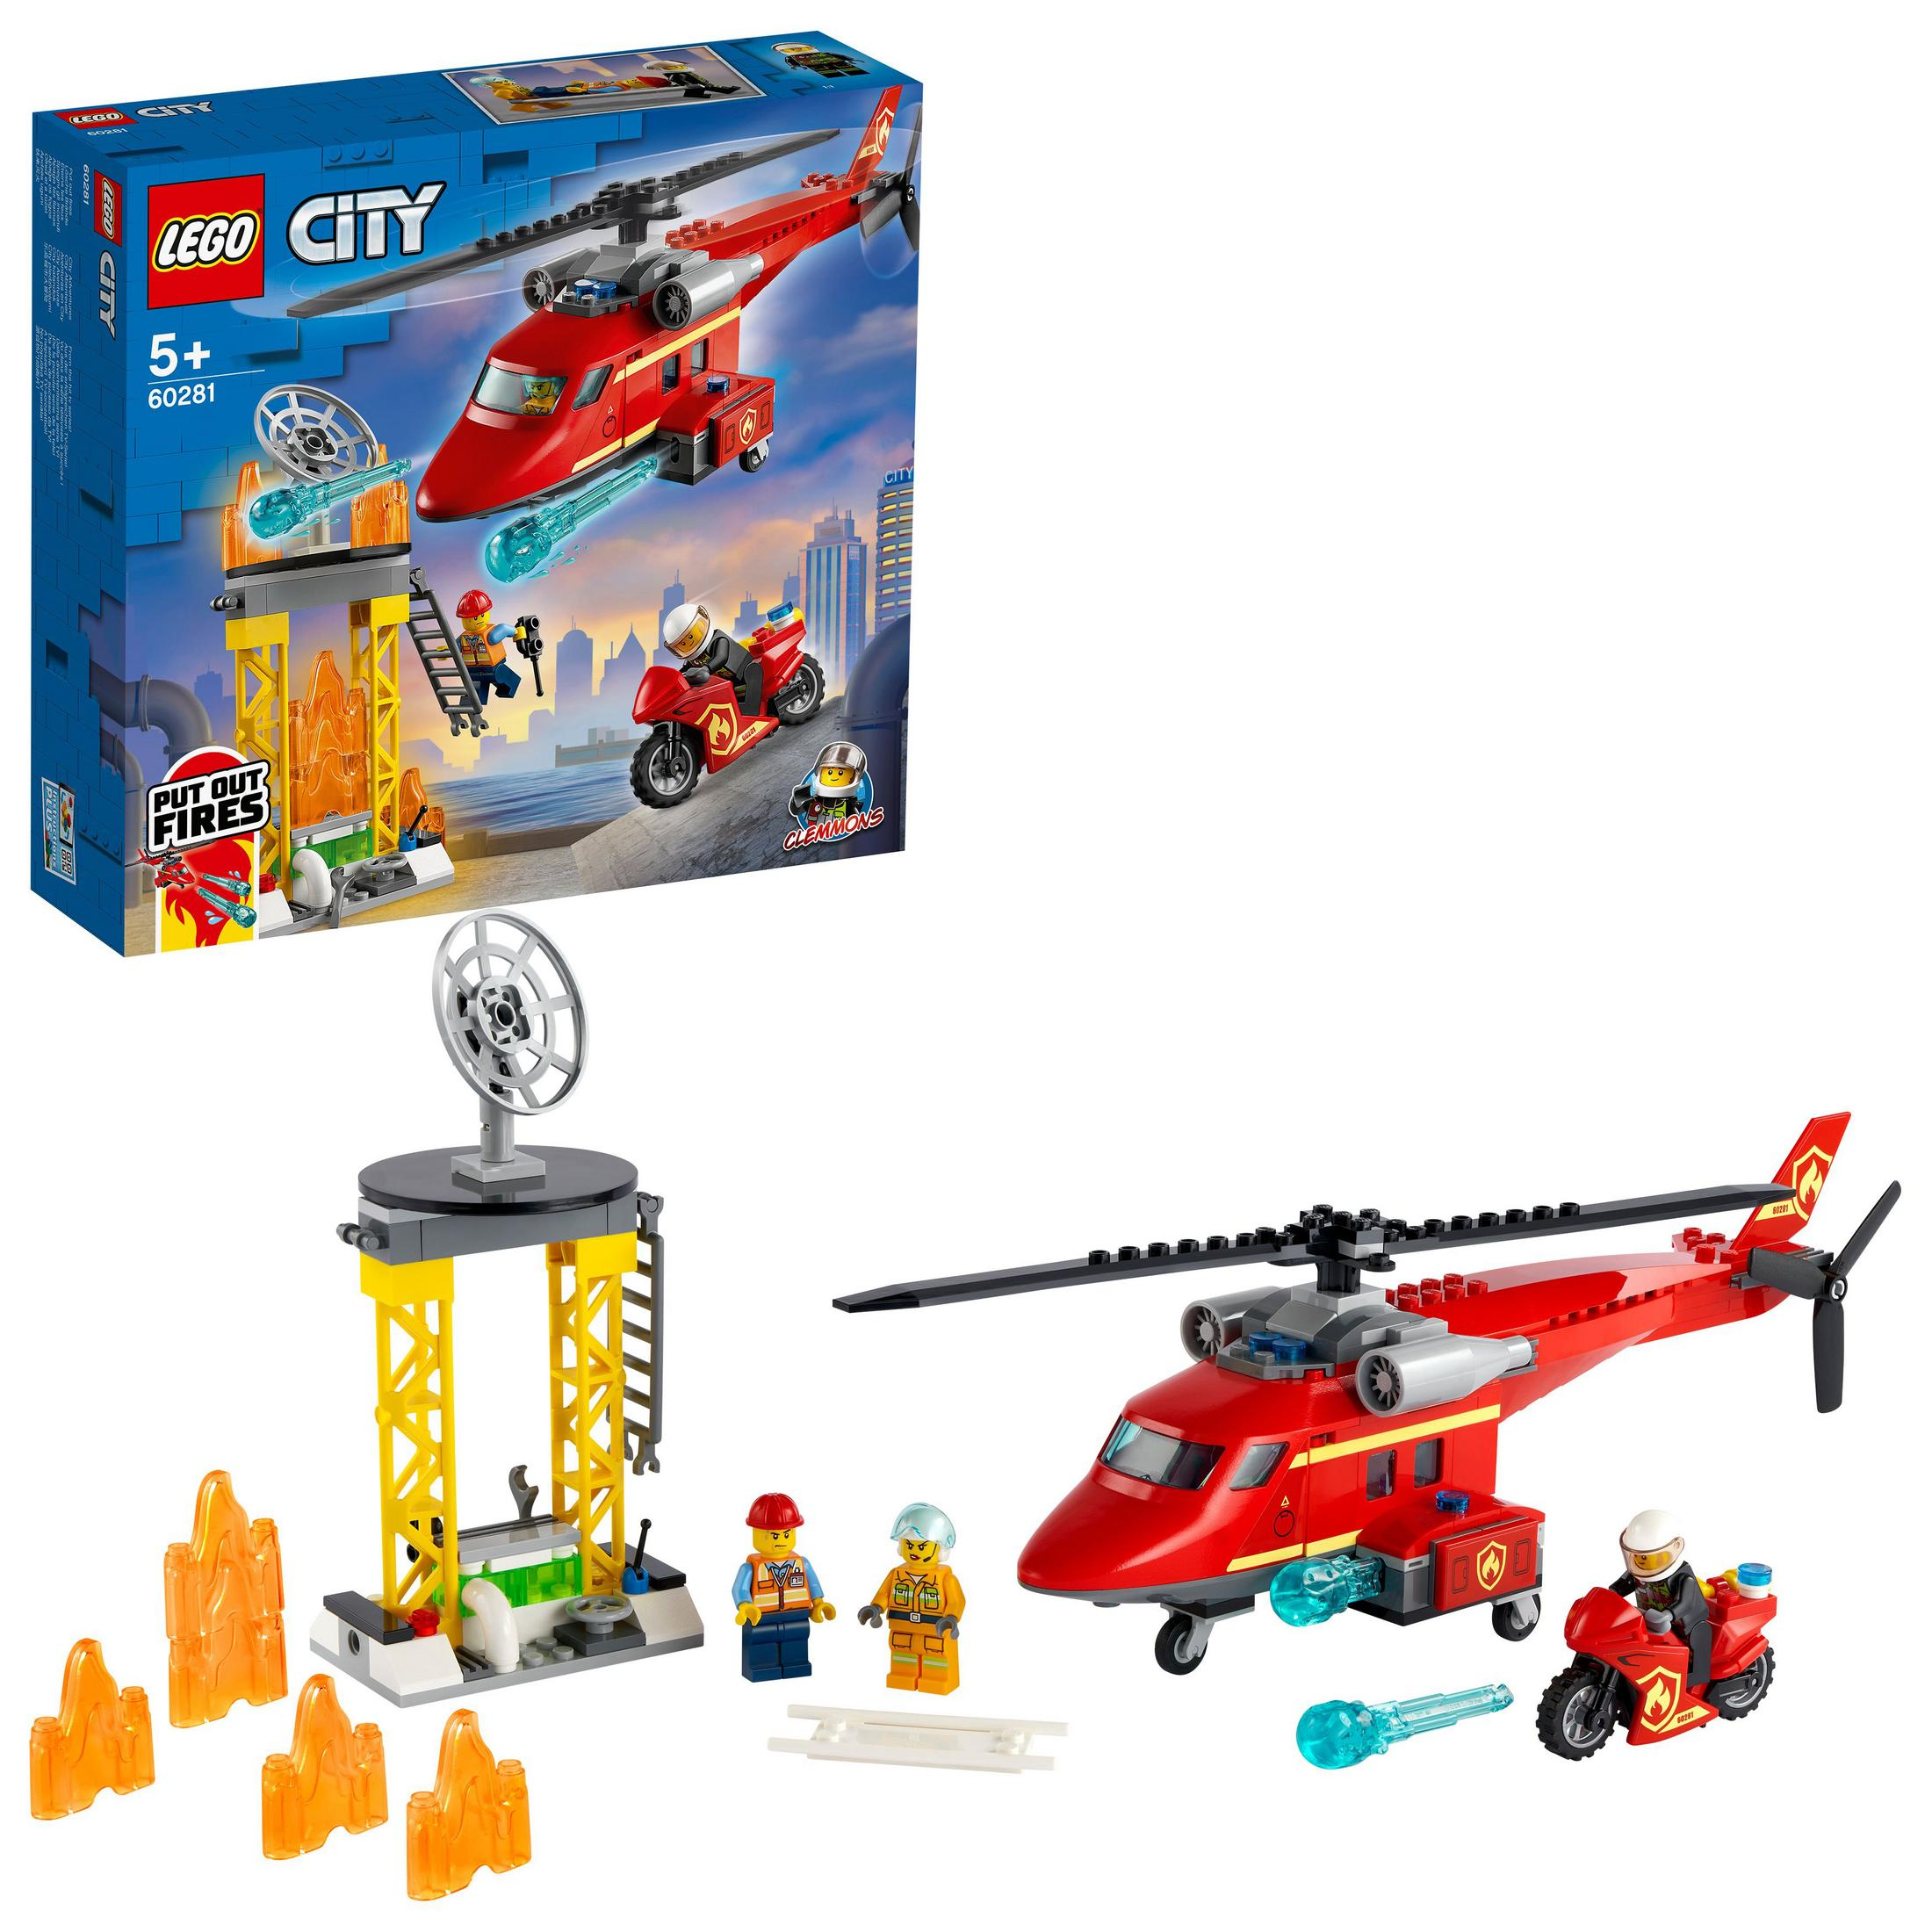 60281 LEGO Bausatz